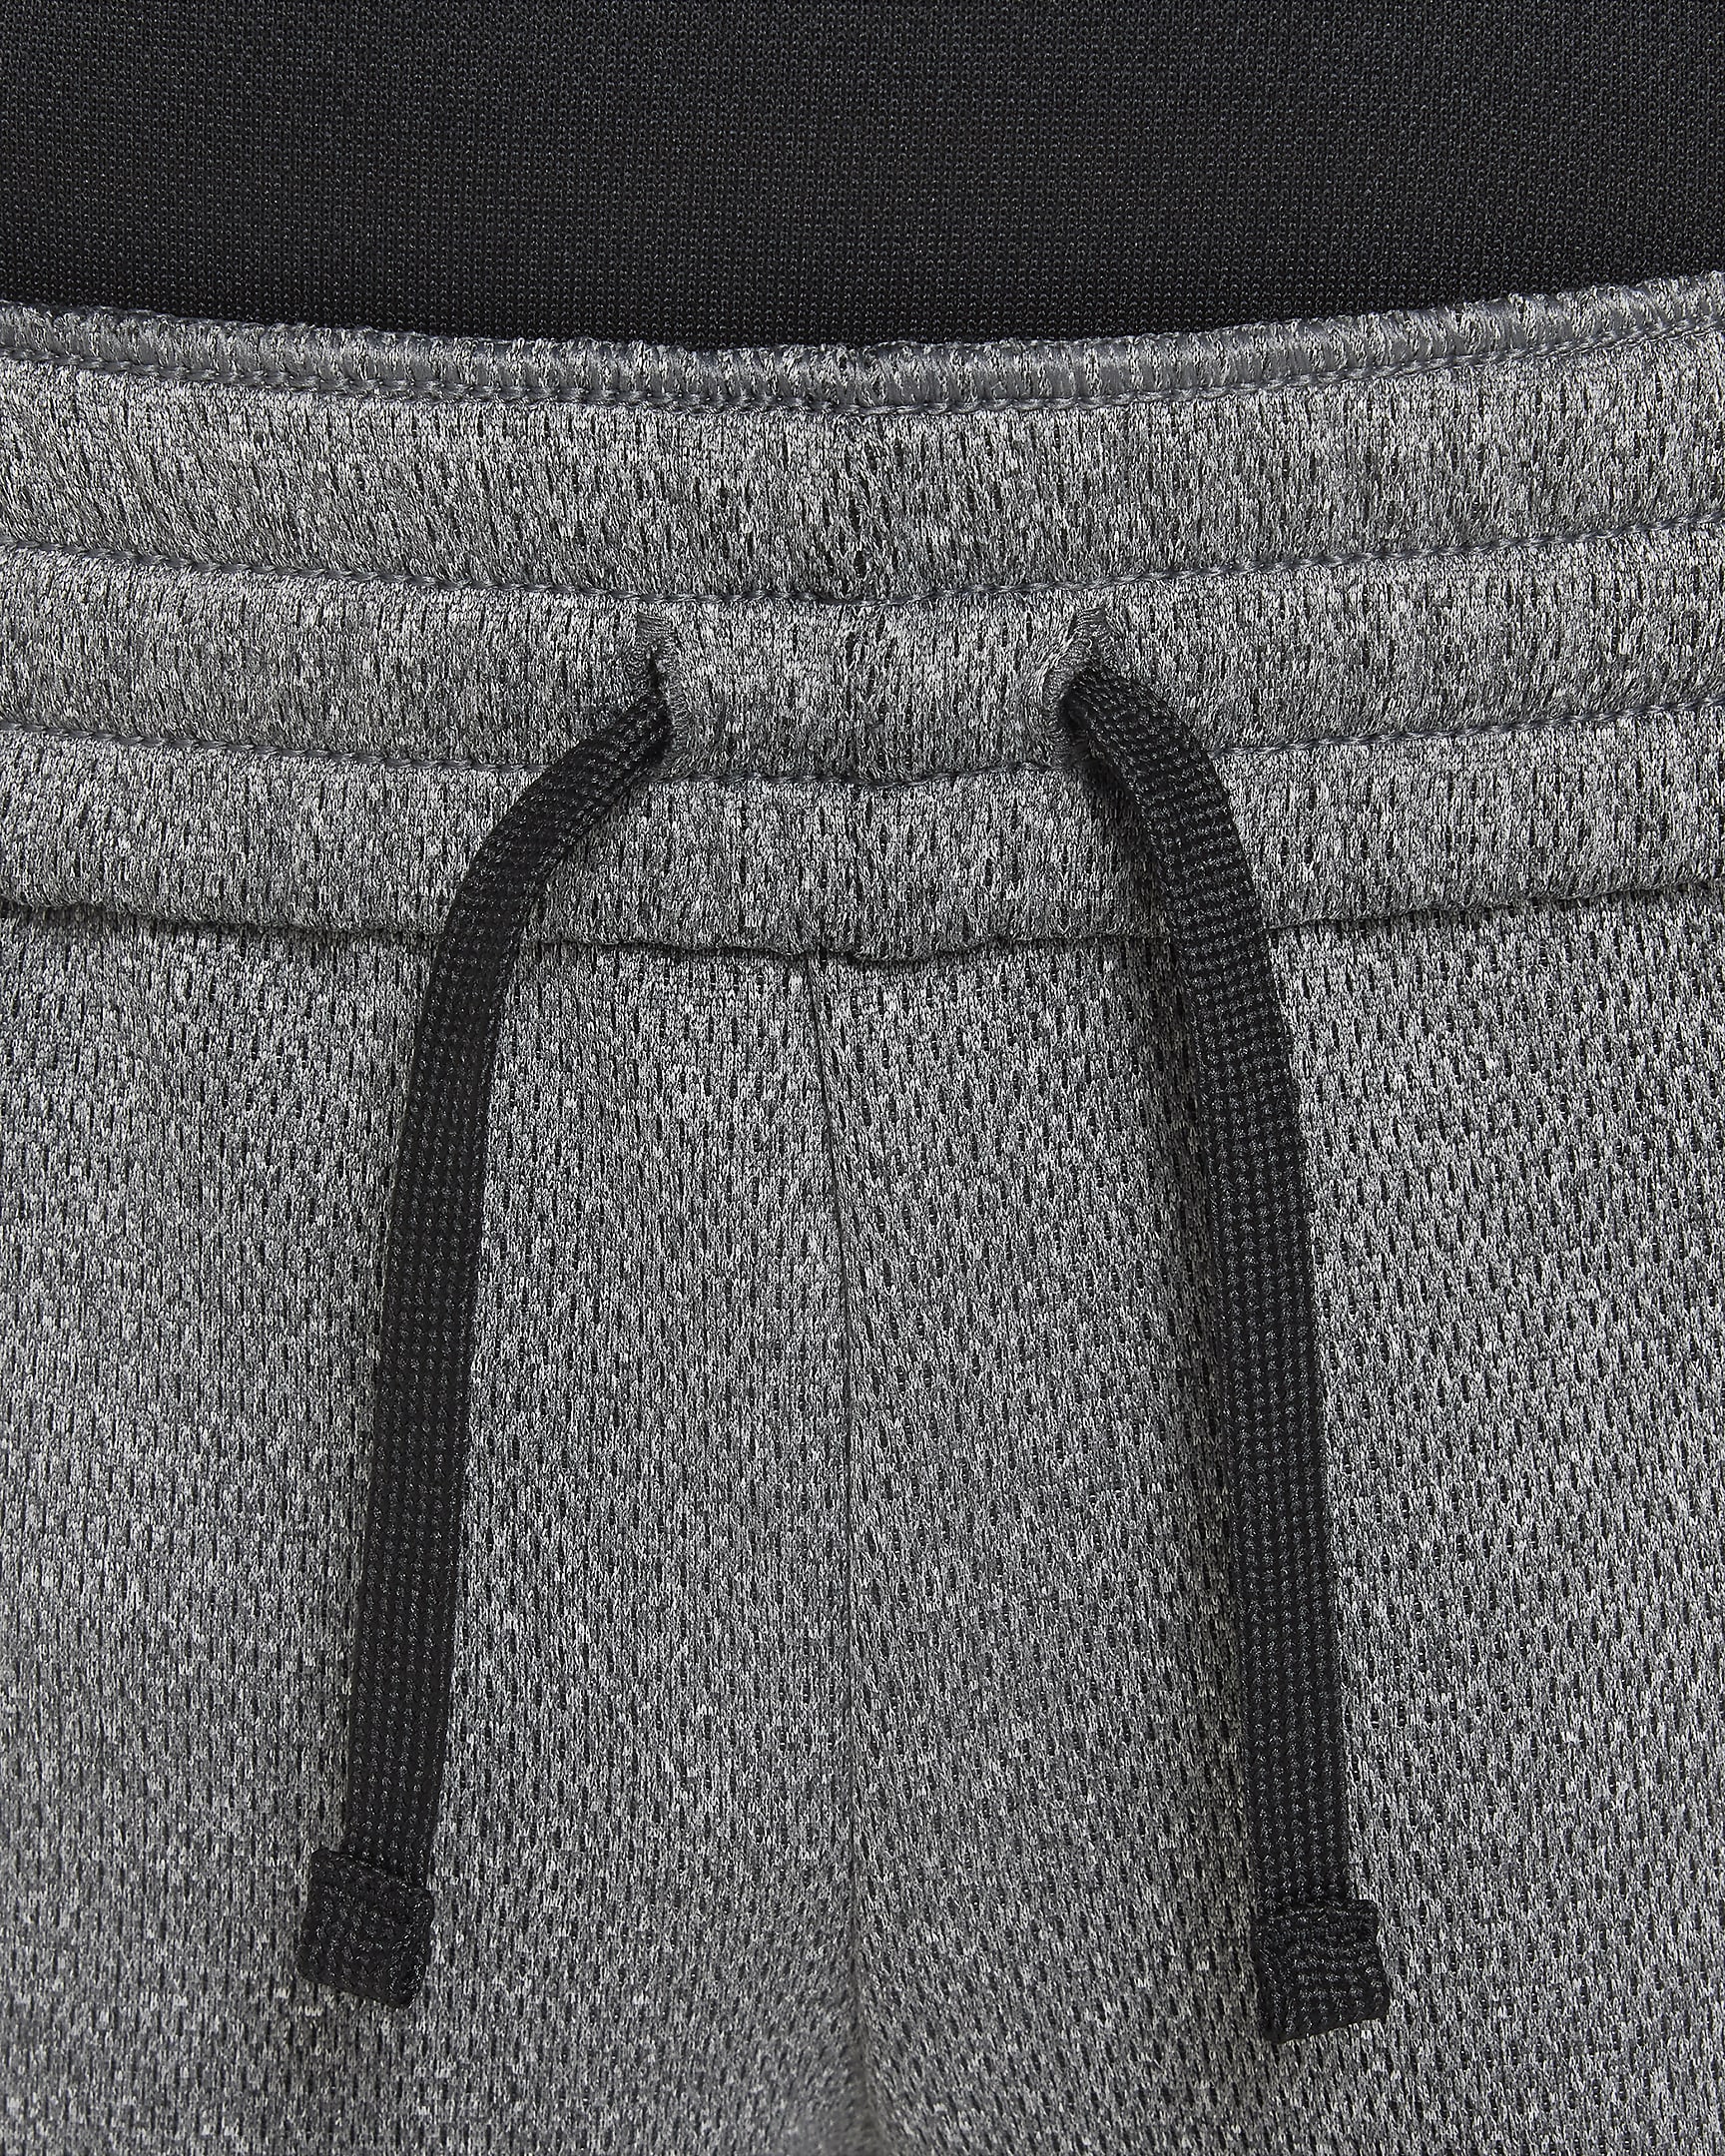 Nike Therma-FIT Winterized-bukser til større børn - sort/hvid